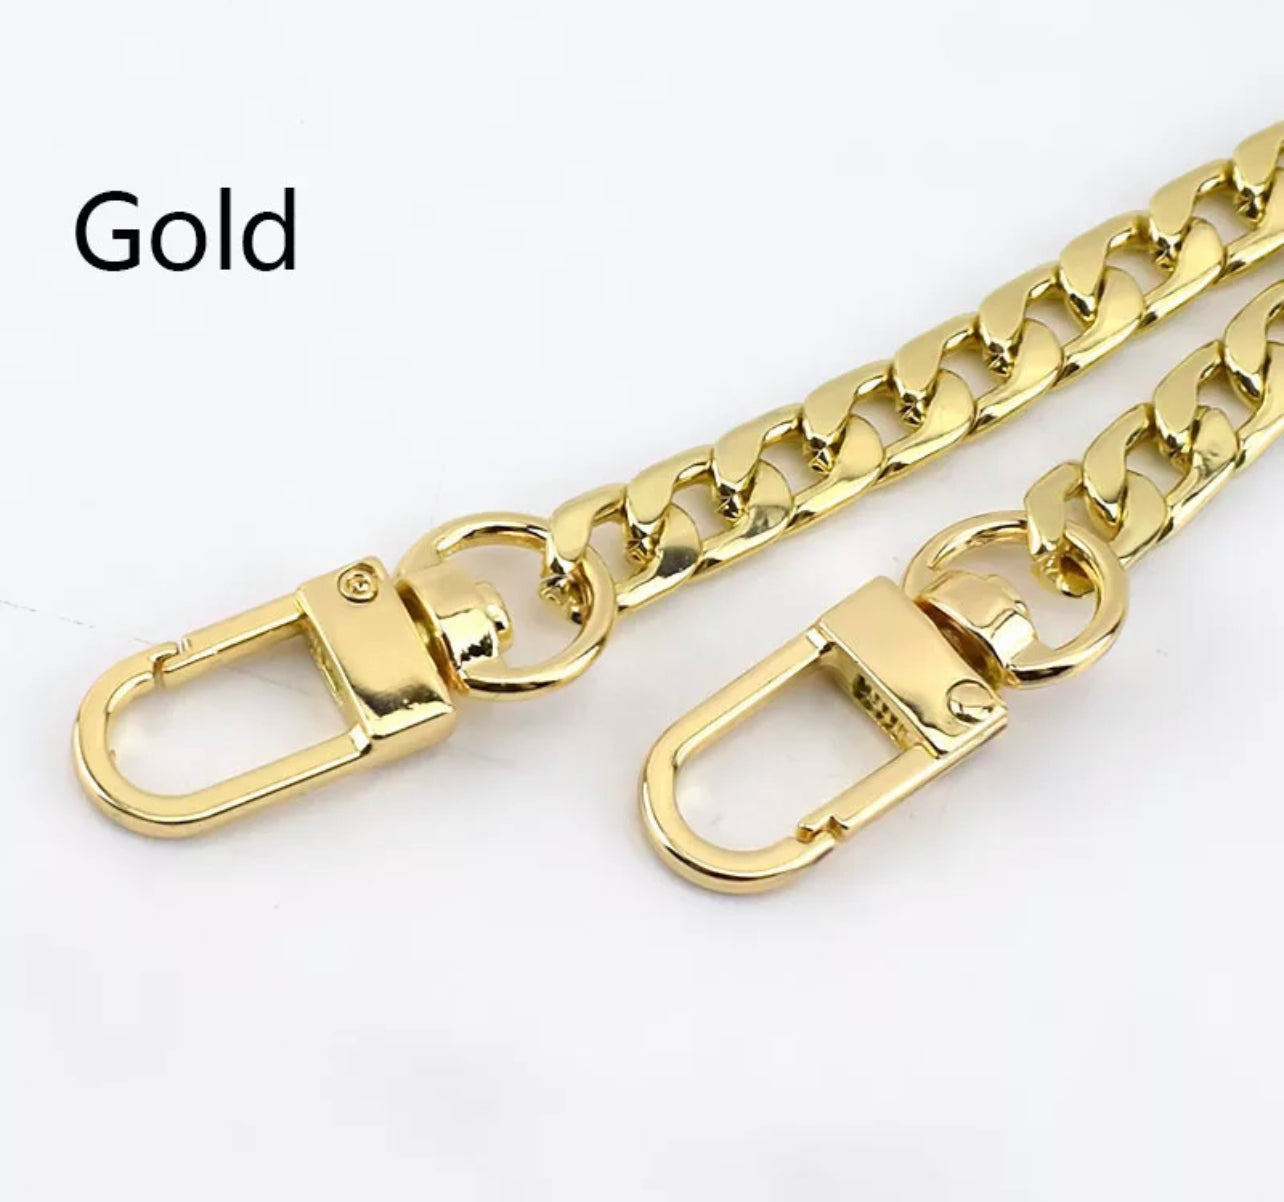 NEW Metal Purse Chain Straps Short 23.75" - Gold / Silver / Dark Steel